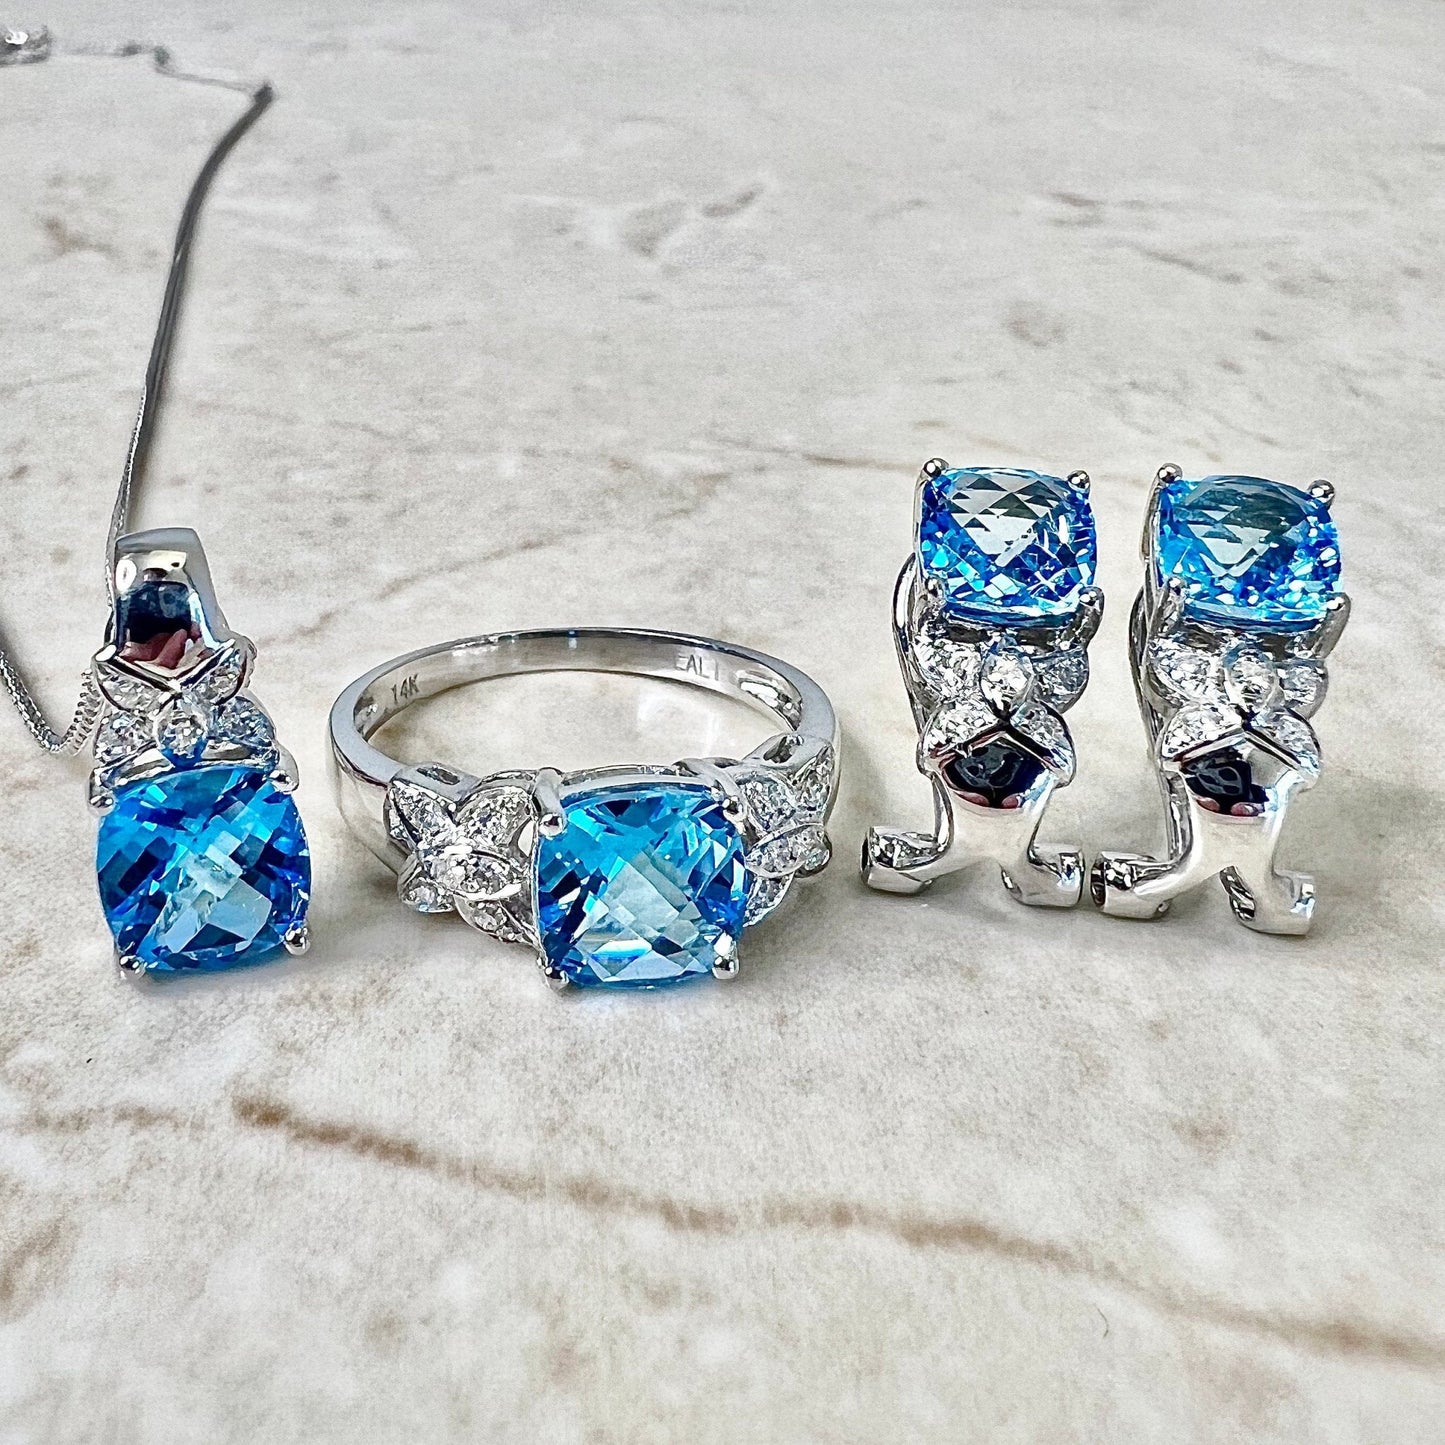 14K Swiss Blue Topaz & Diamond Ring Stud Earrings Pendant Set - White Gold Blue Topaz Jewelry Set - December Birthstone - Birthday Gift